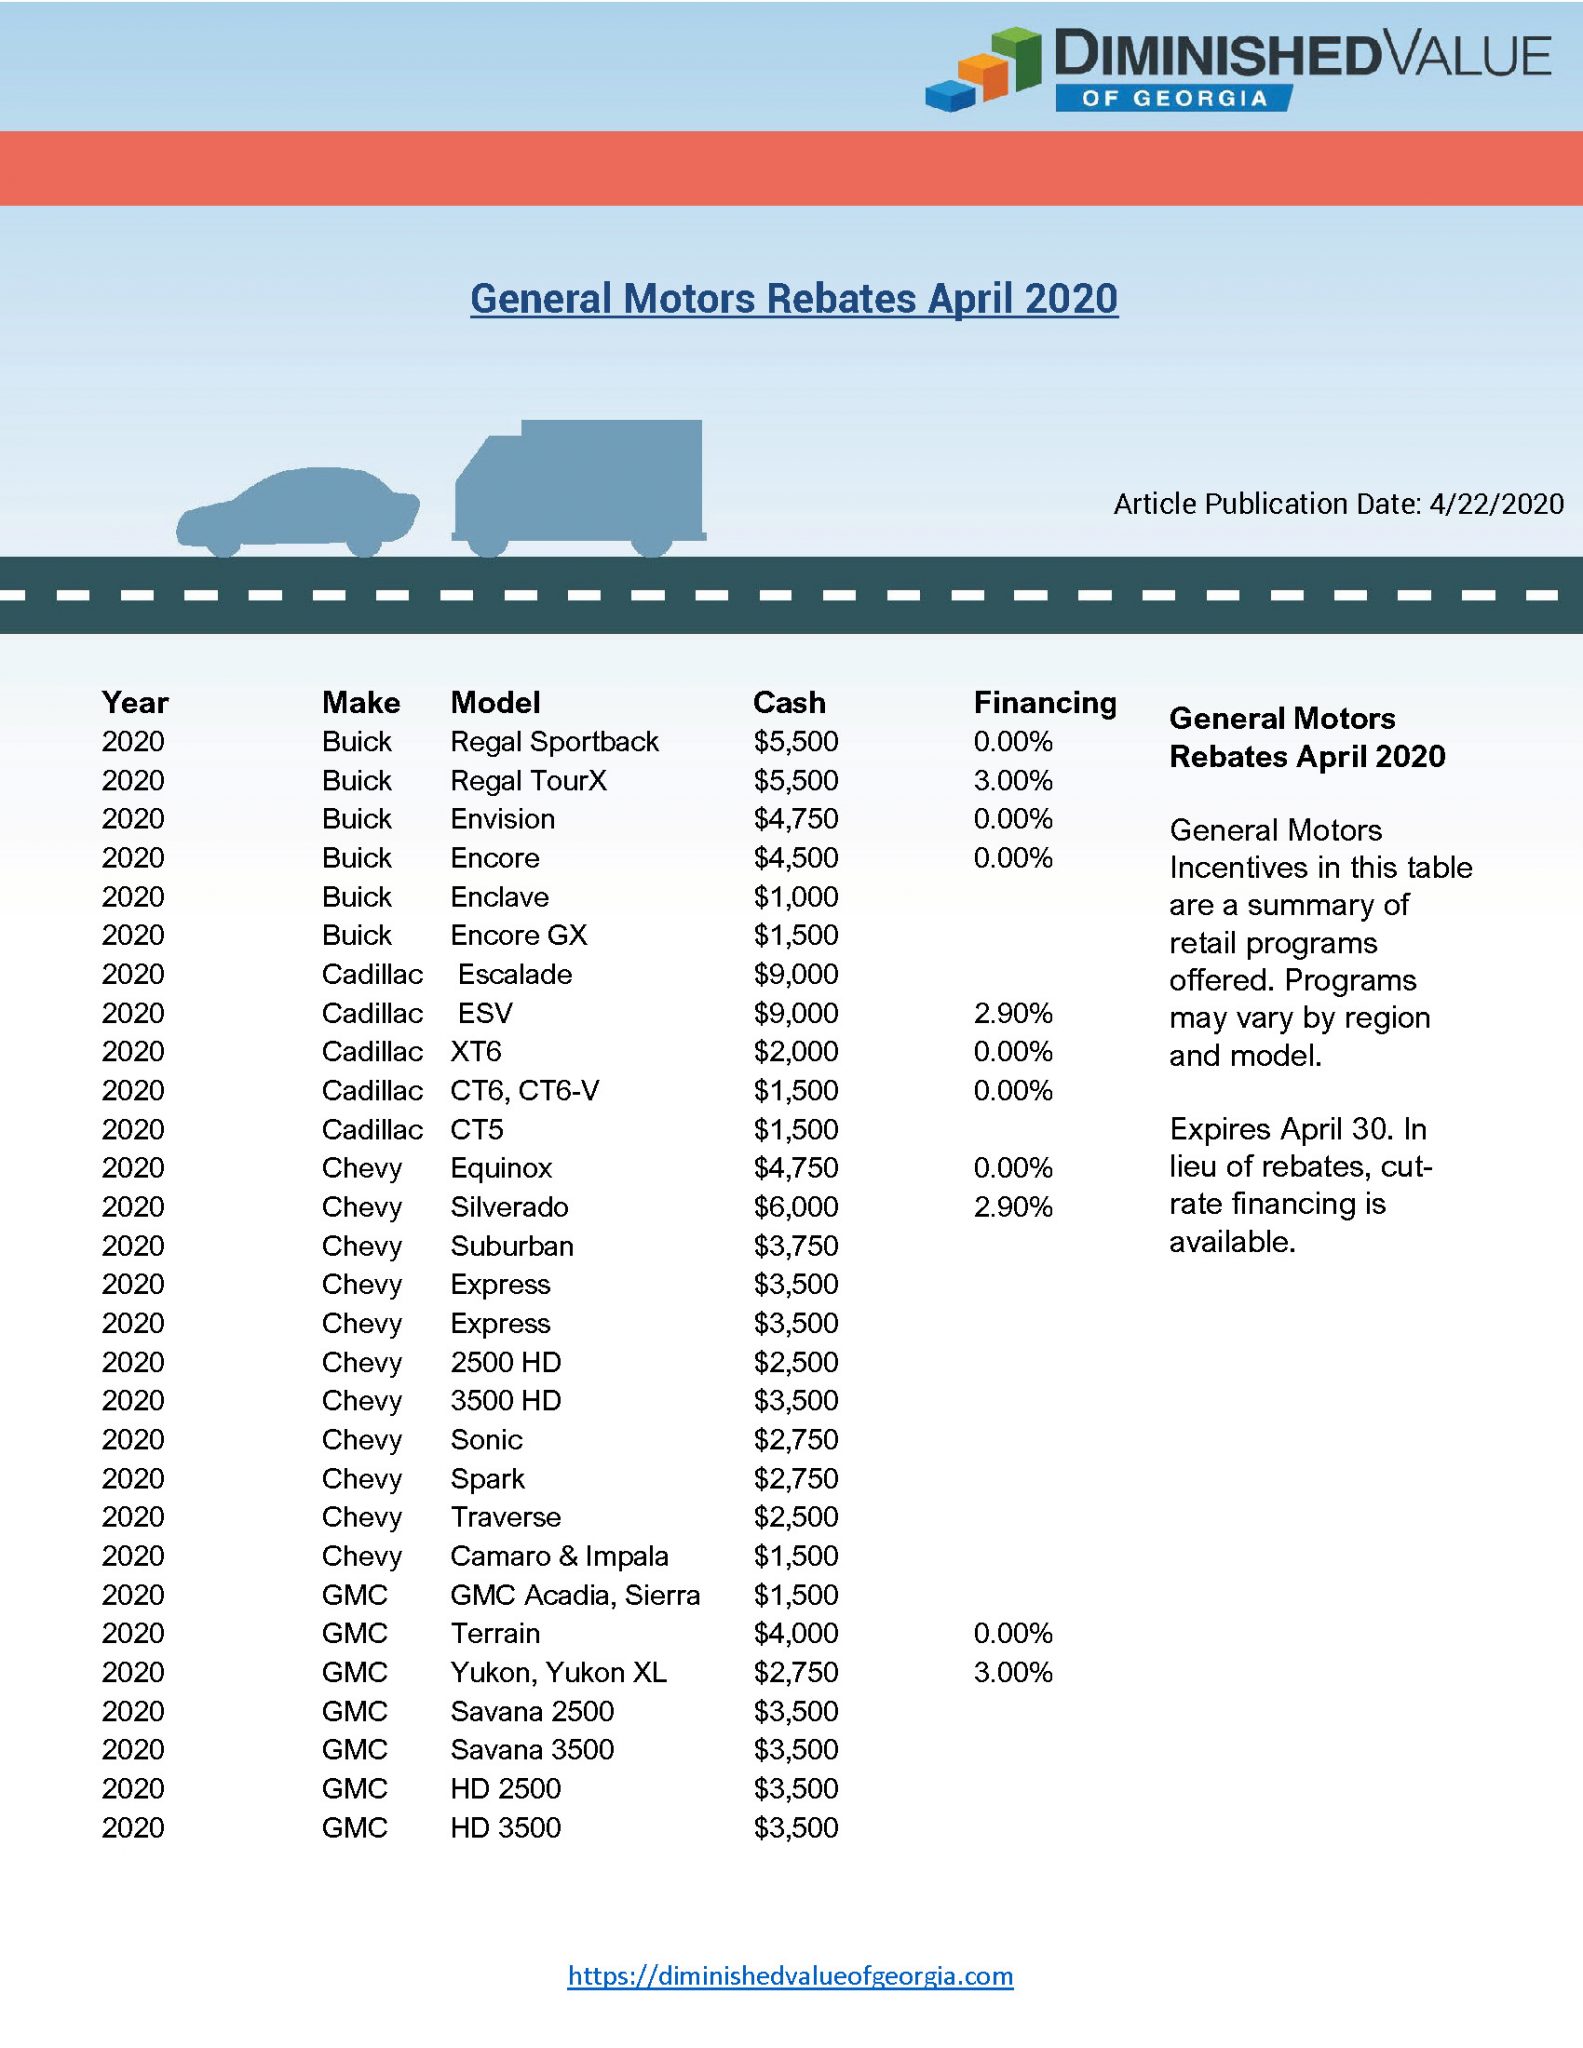 General Motors Rebates April 2020 Diminished Value Of Georgia